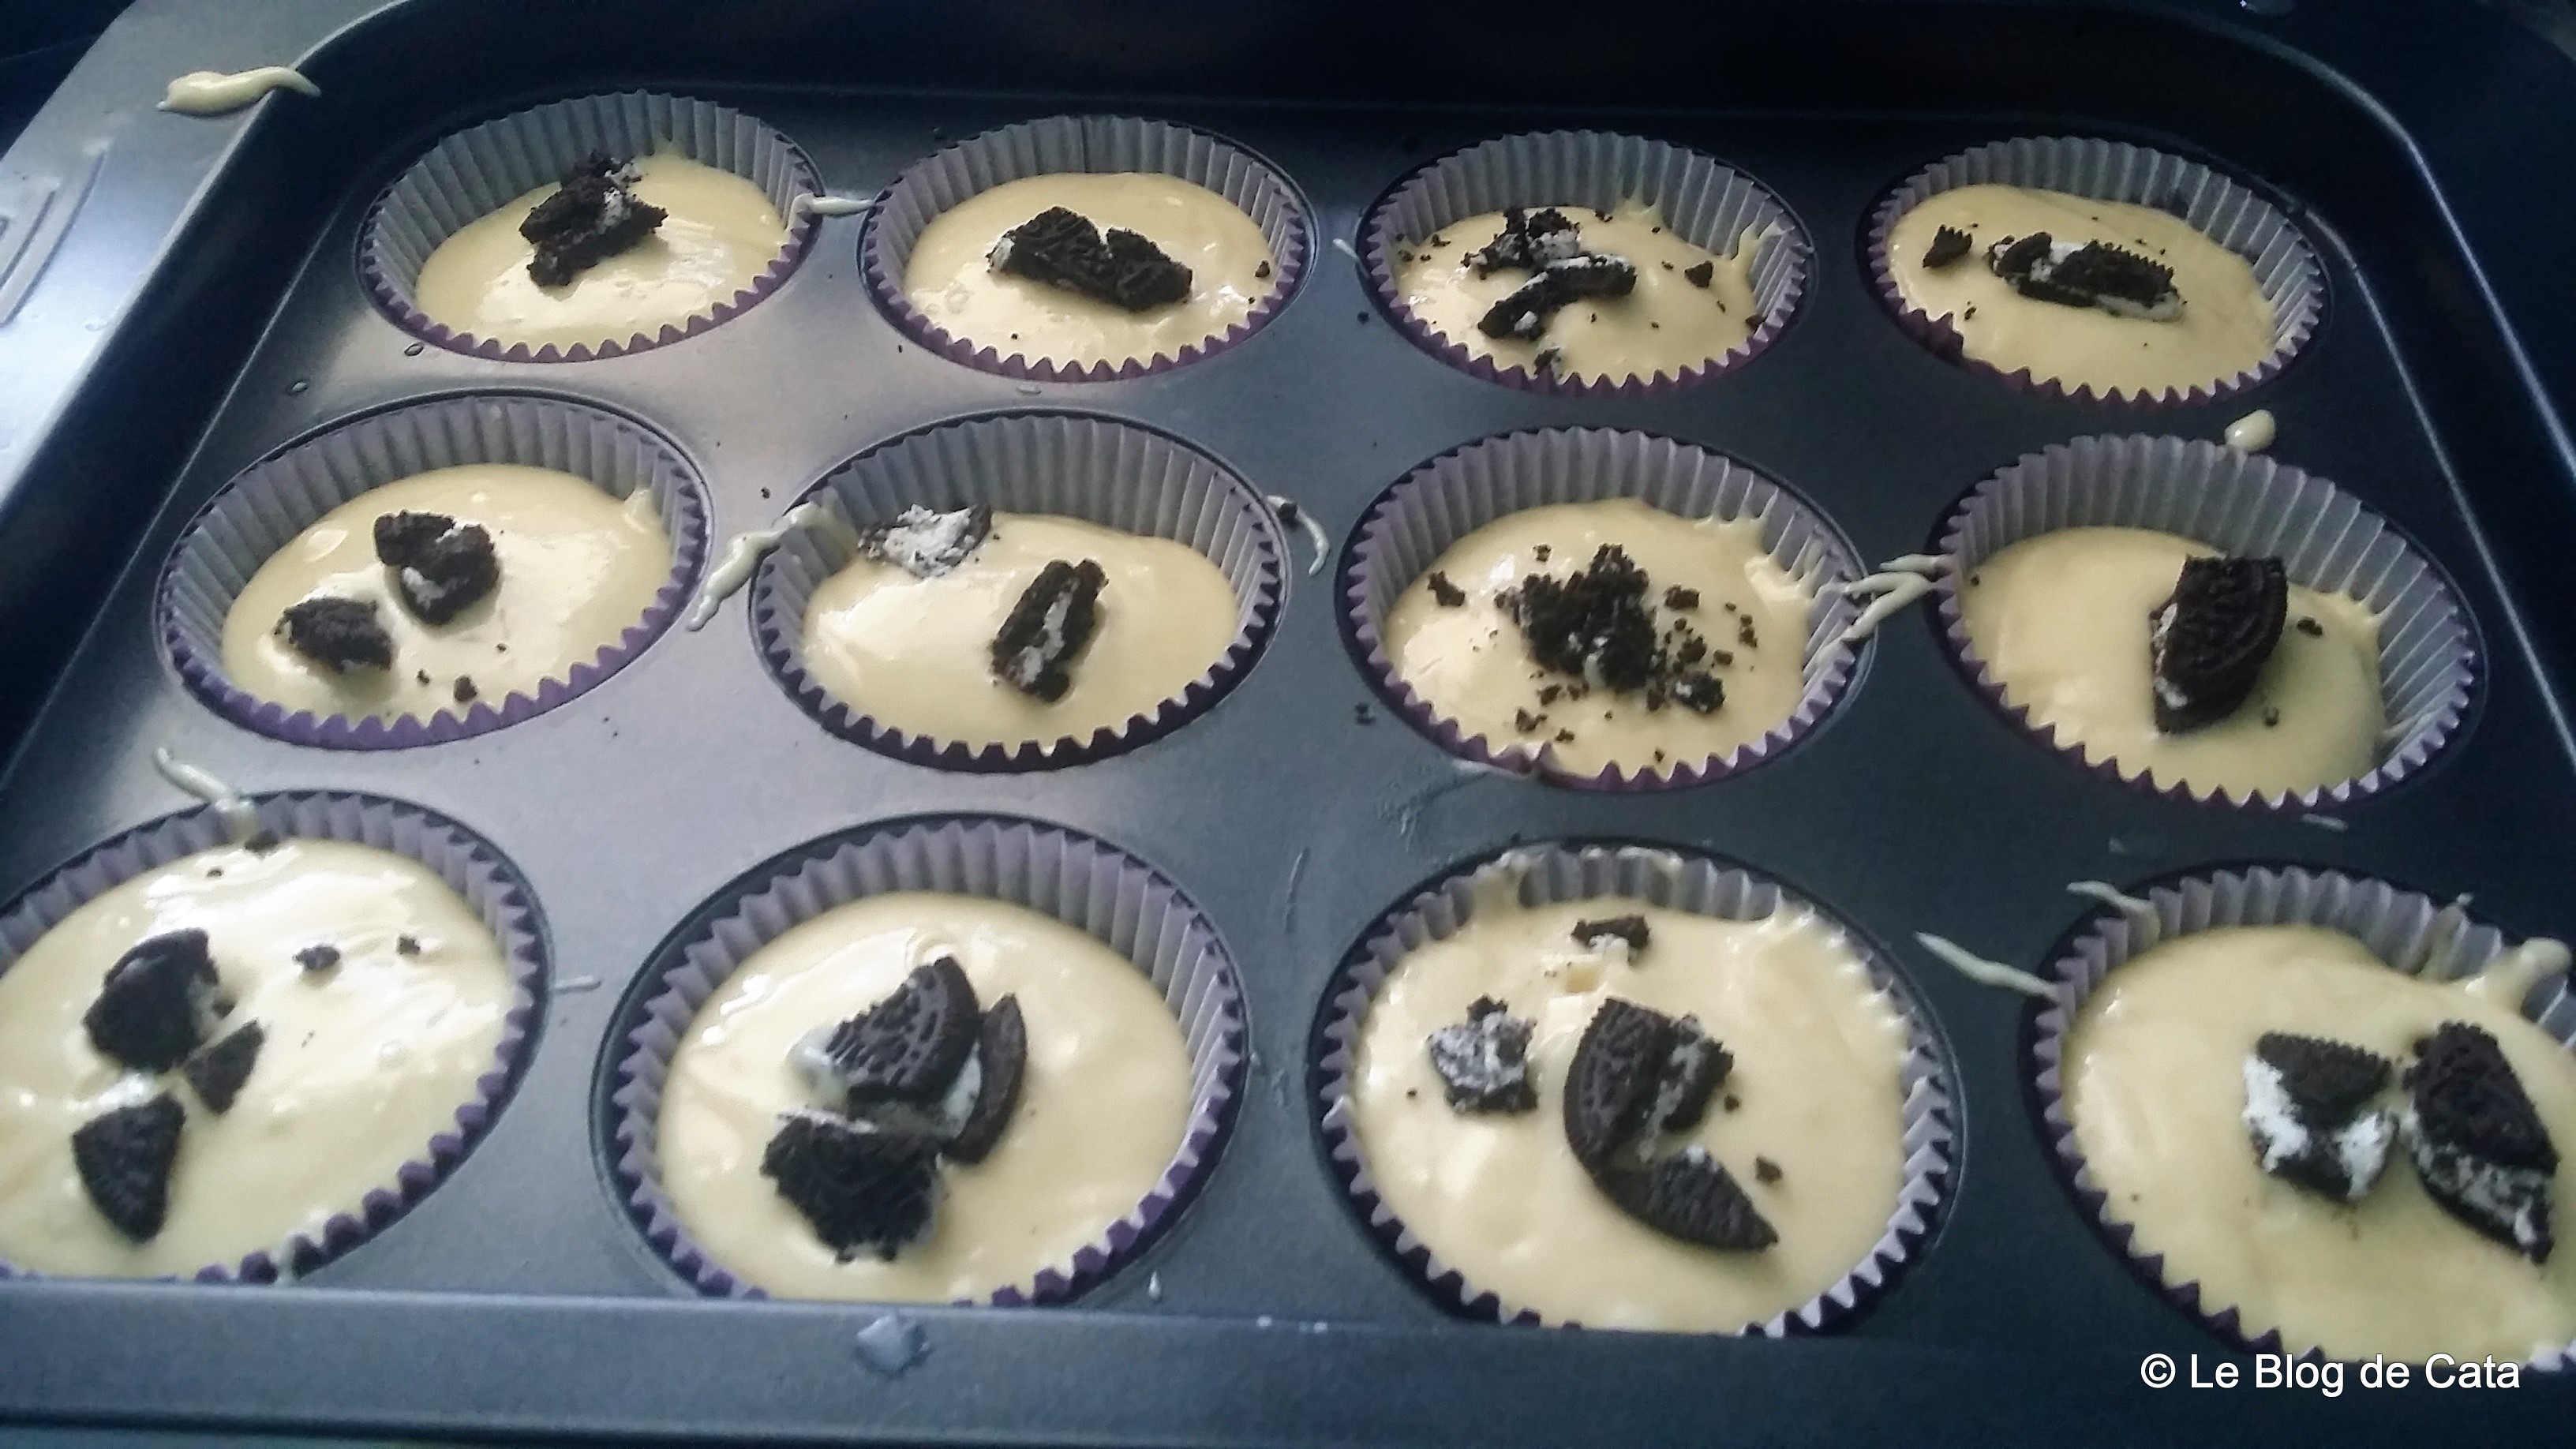 Desert muffins cu biscuiti Oreo